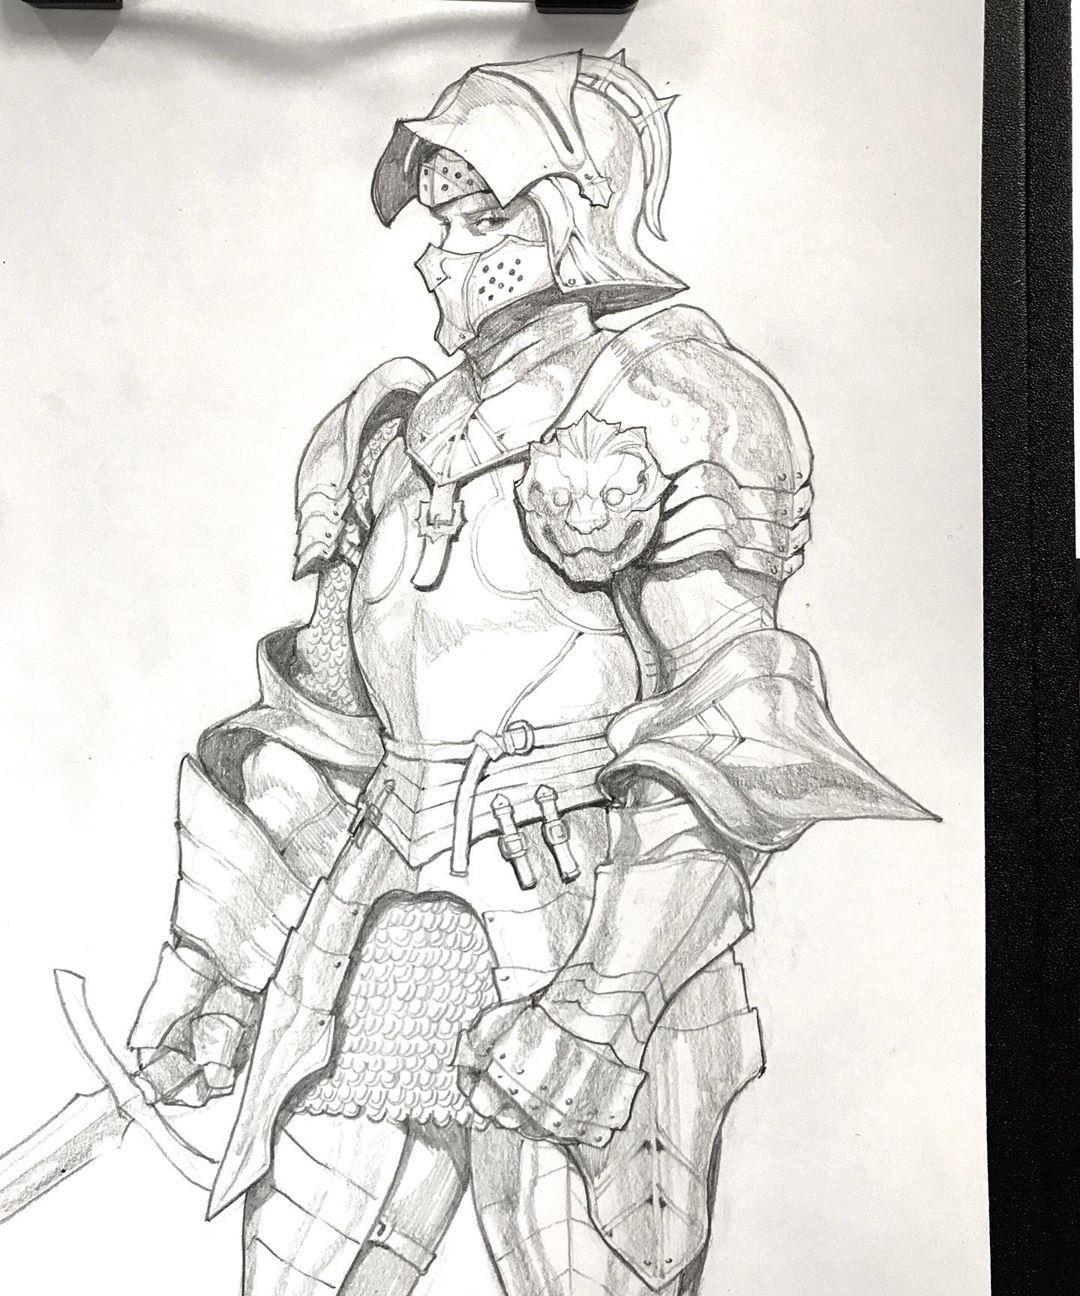 硬核动漫人物手绘 服饰姿态刻画精致细腻 特别是铠甲